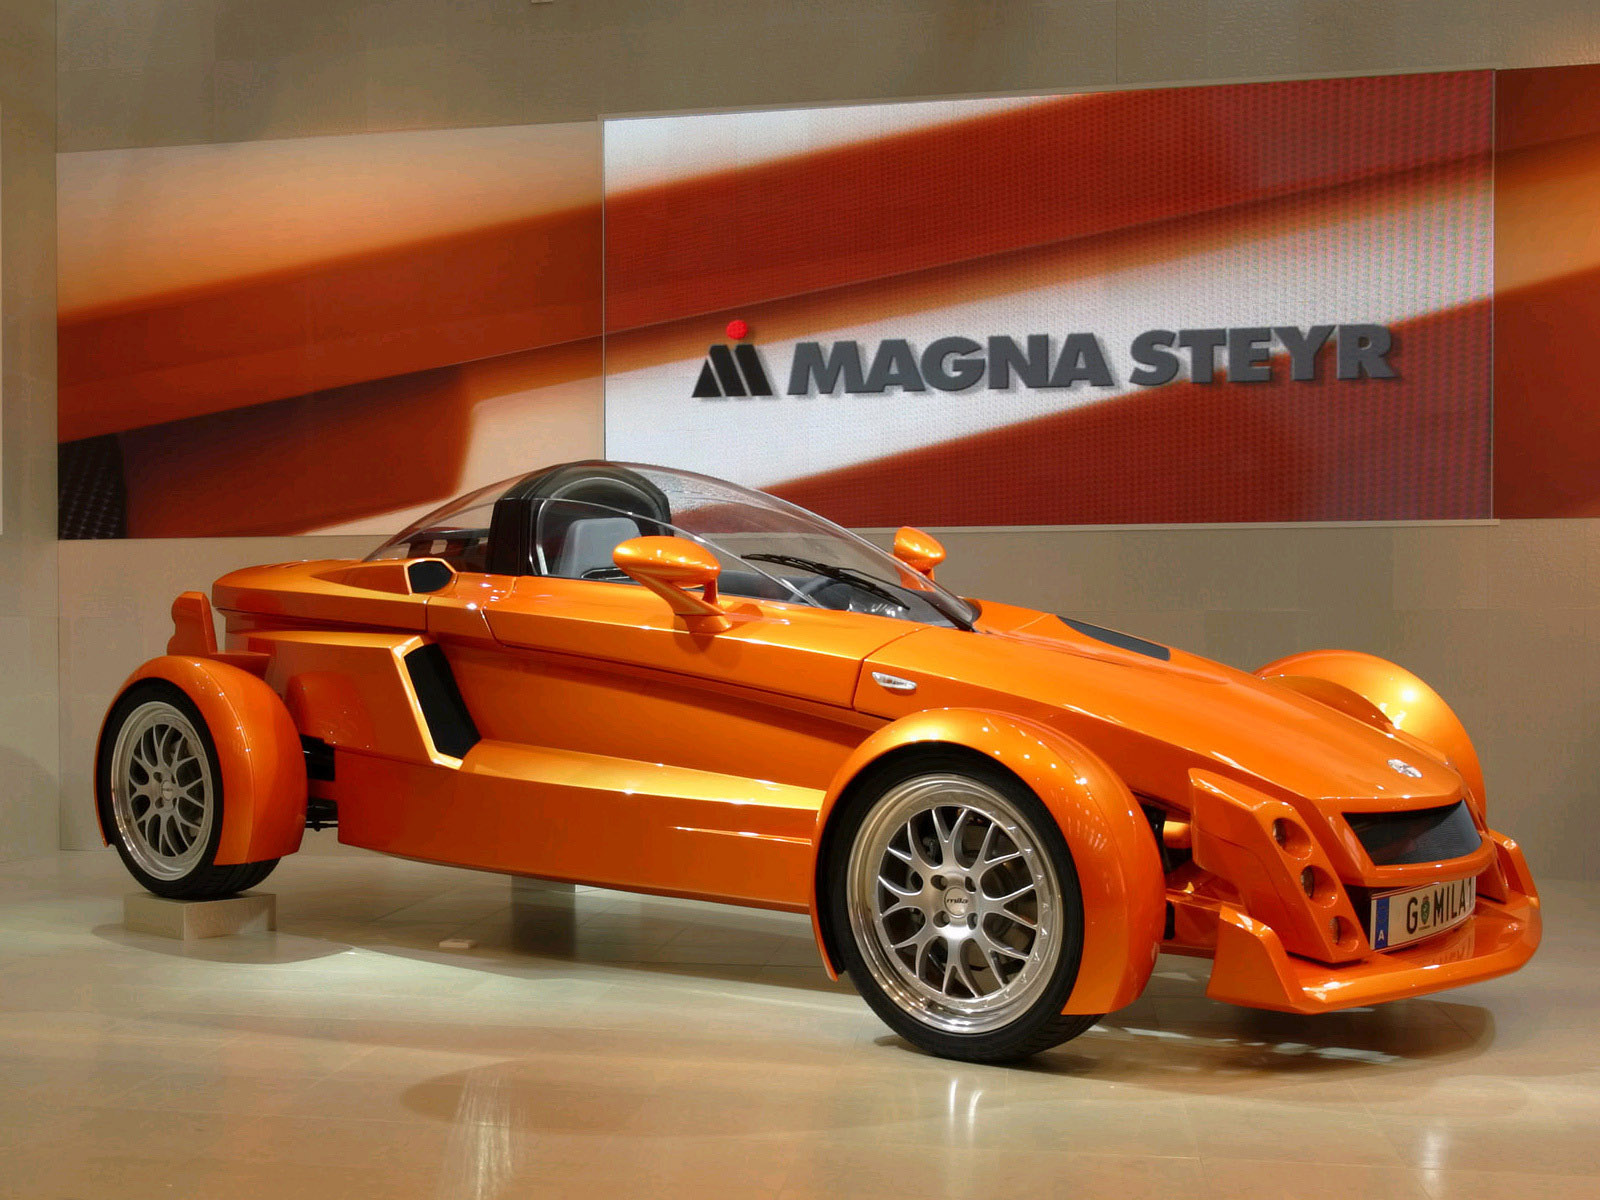 2005, Magna, Steyr, Mila, Concept, Supercar Wallpaper